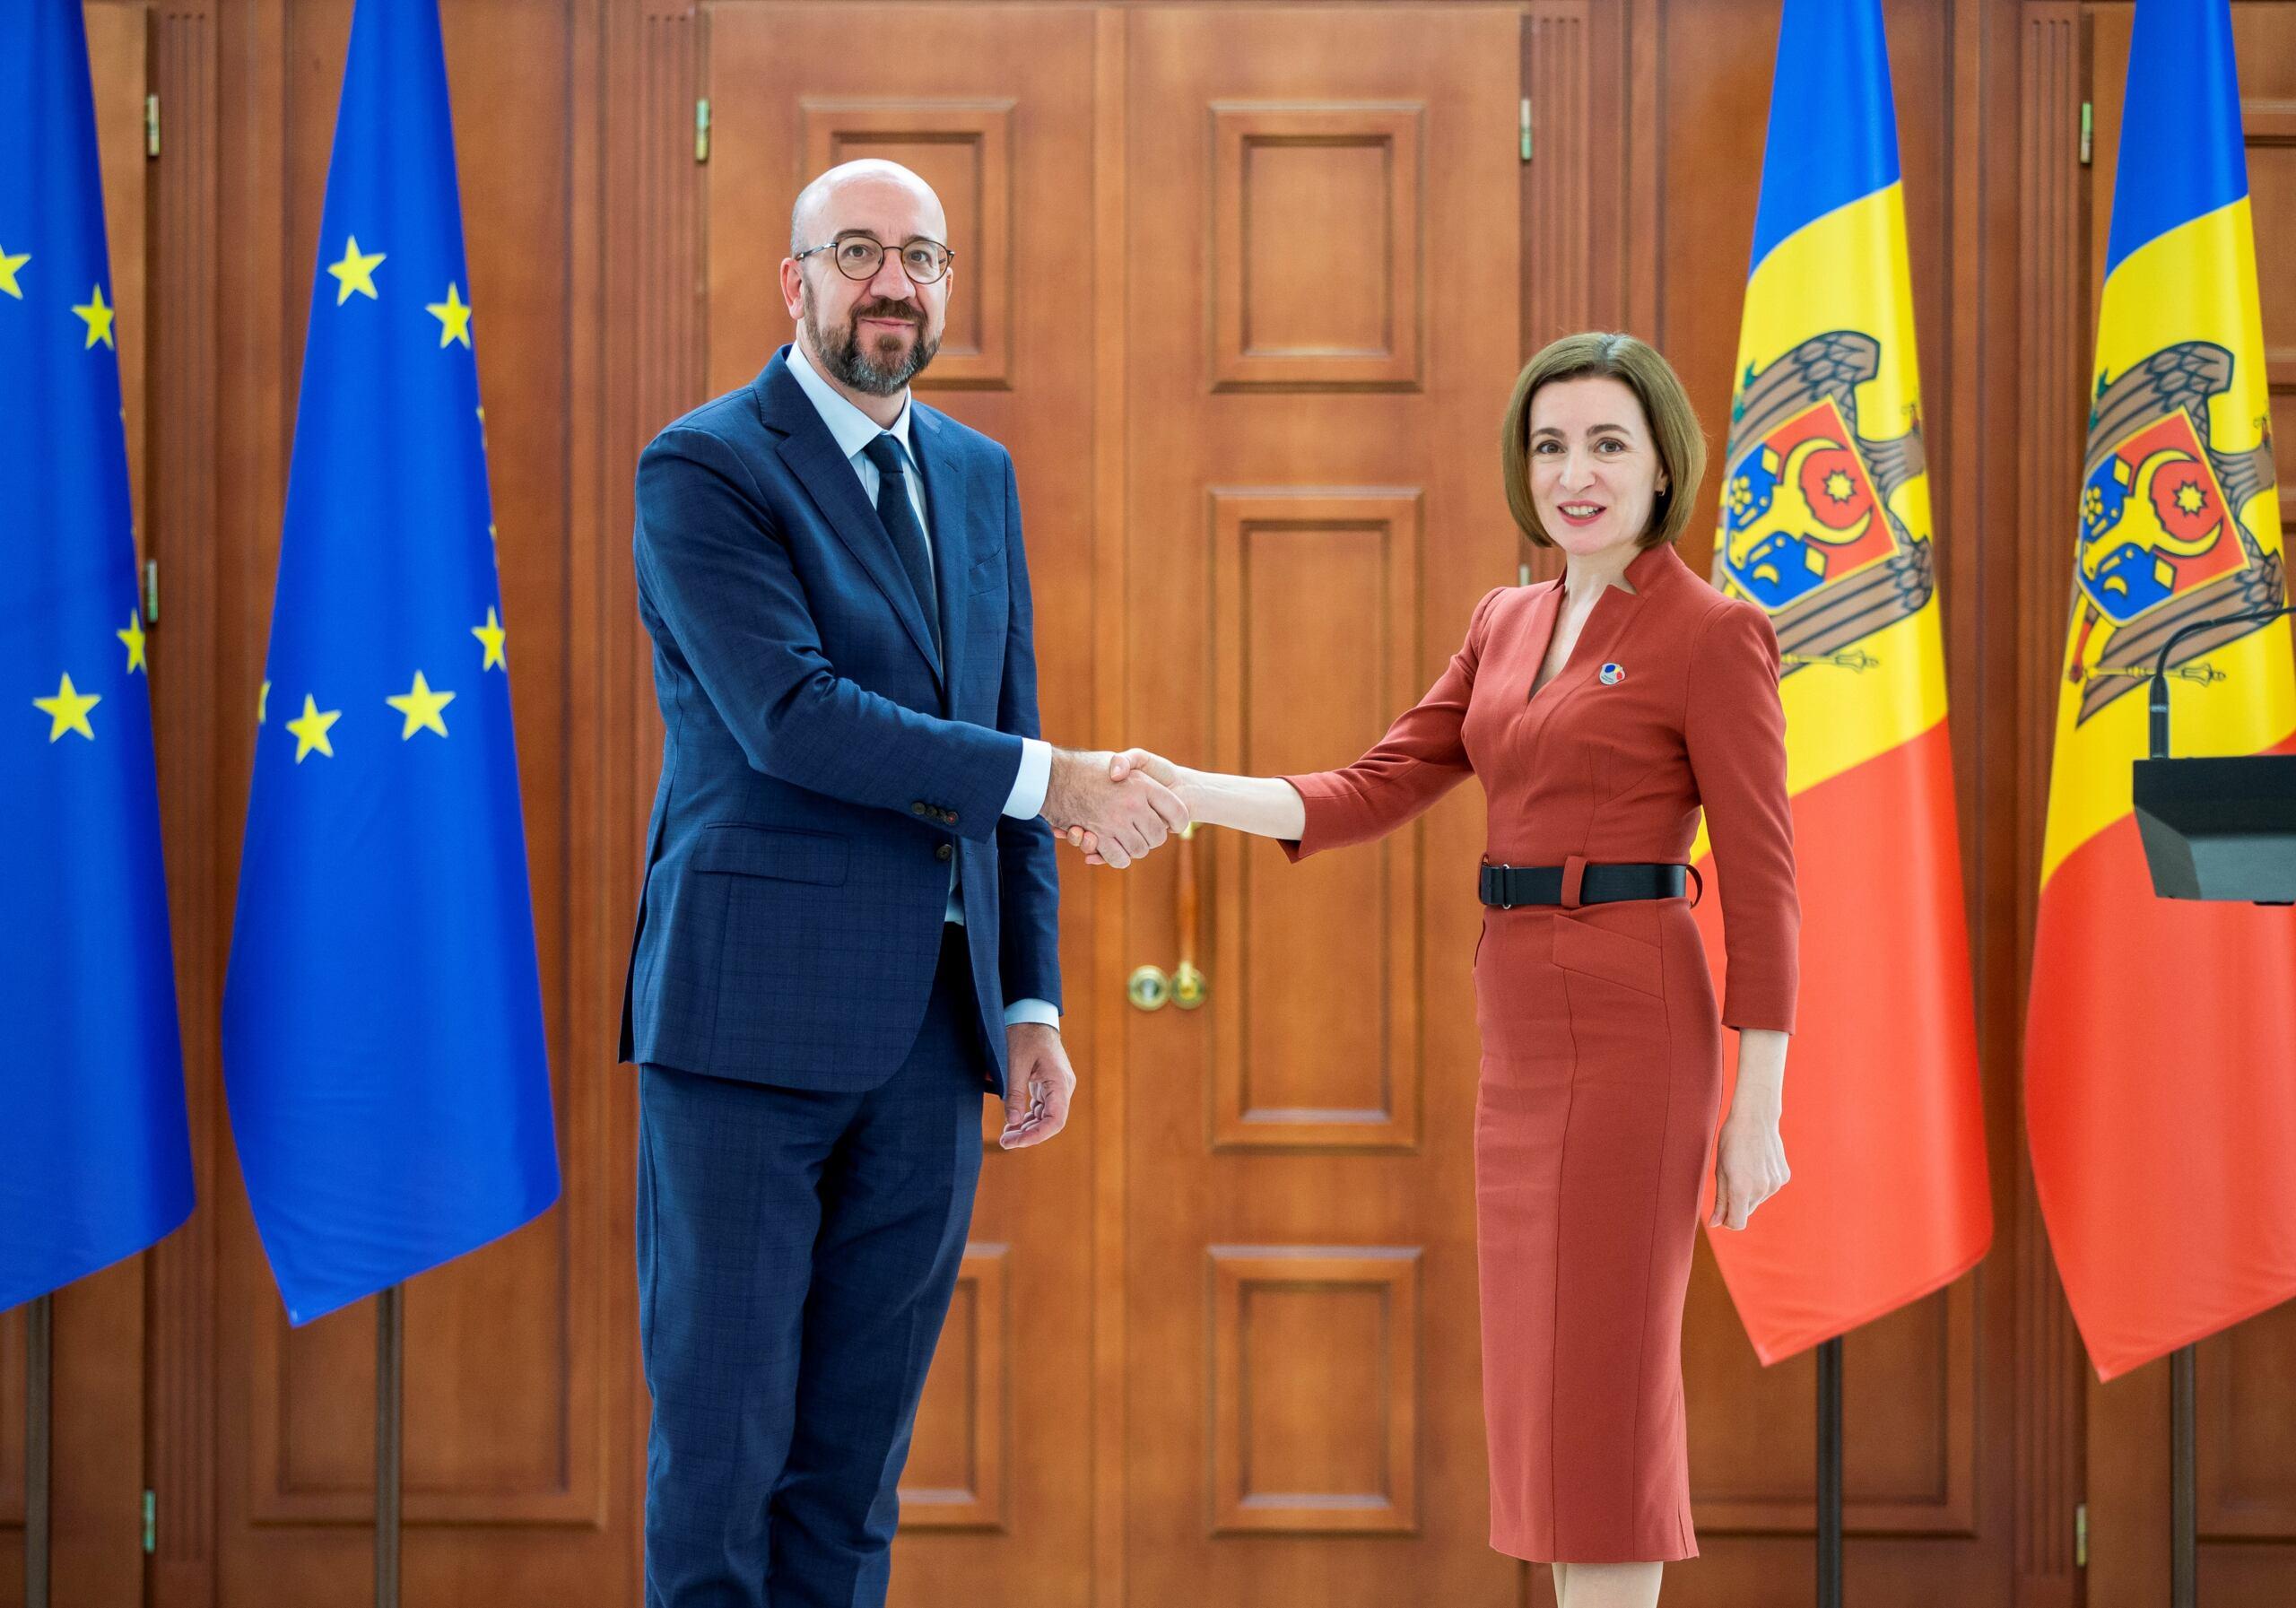 Ubrany w garnitur szef Rady Europejskiej Charles Michel wita się z ubraną ciemno czerwoną sukienkę prezydentkę Mołdawii Maię Sandu. W tle flagi UE i Mołdawii